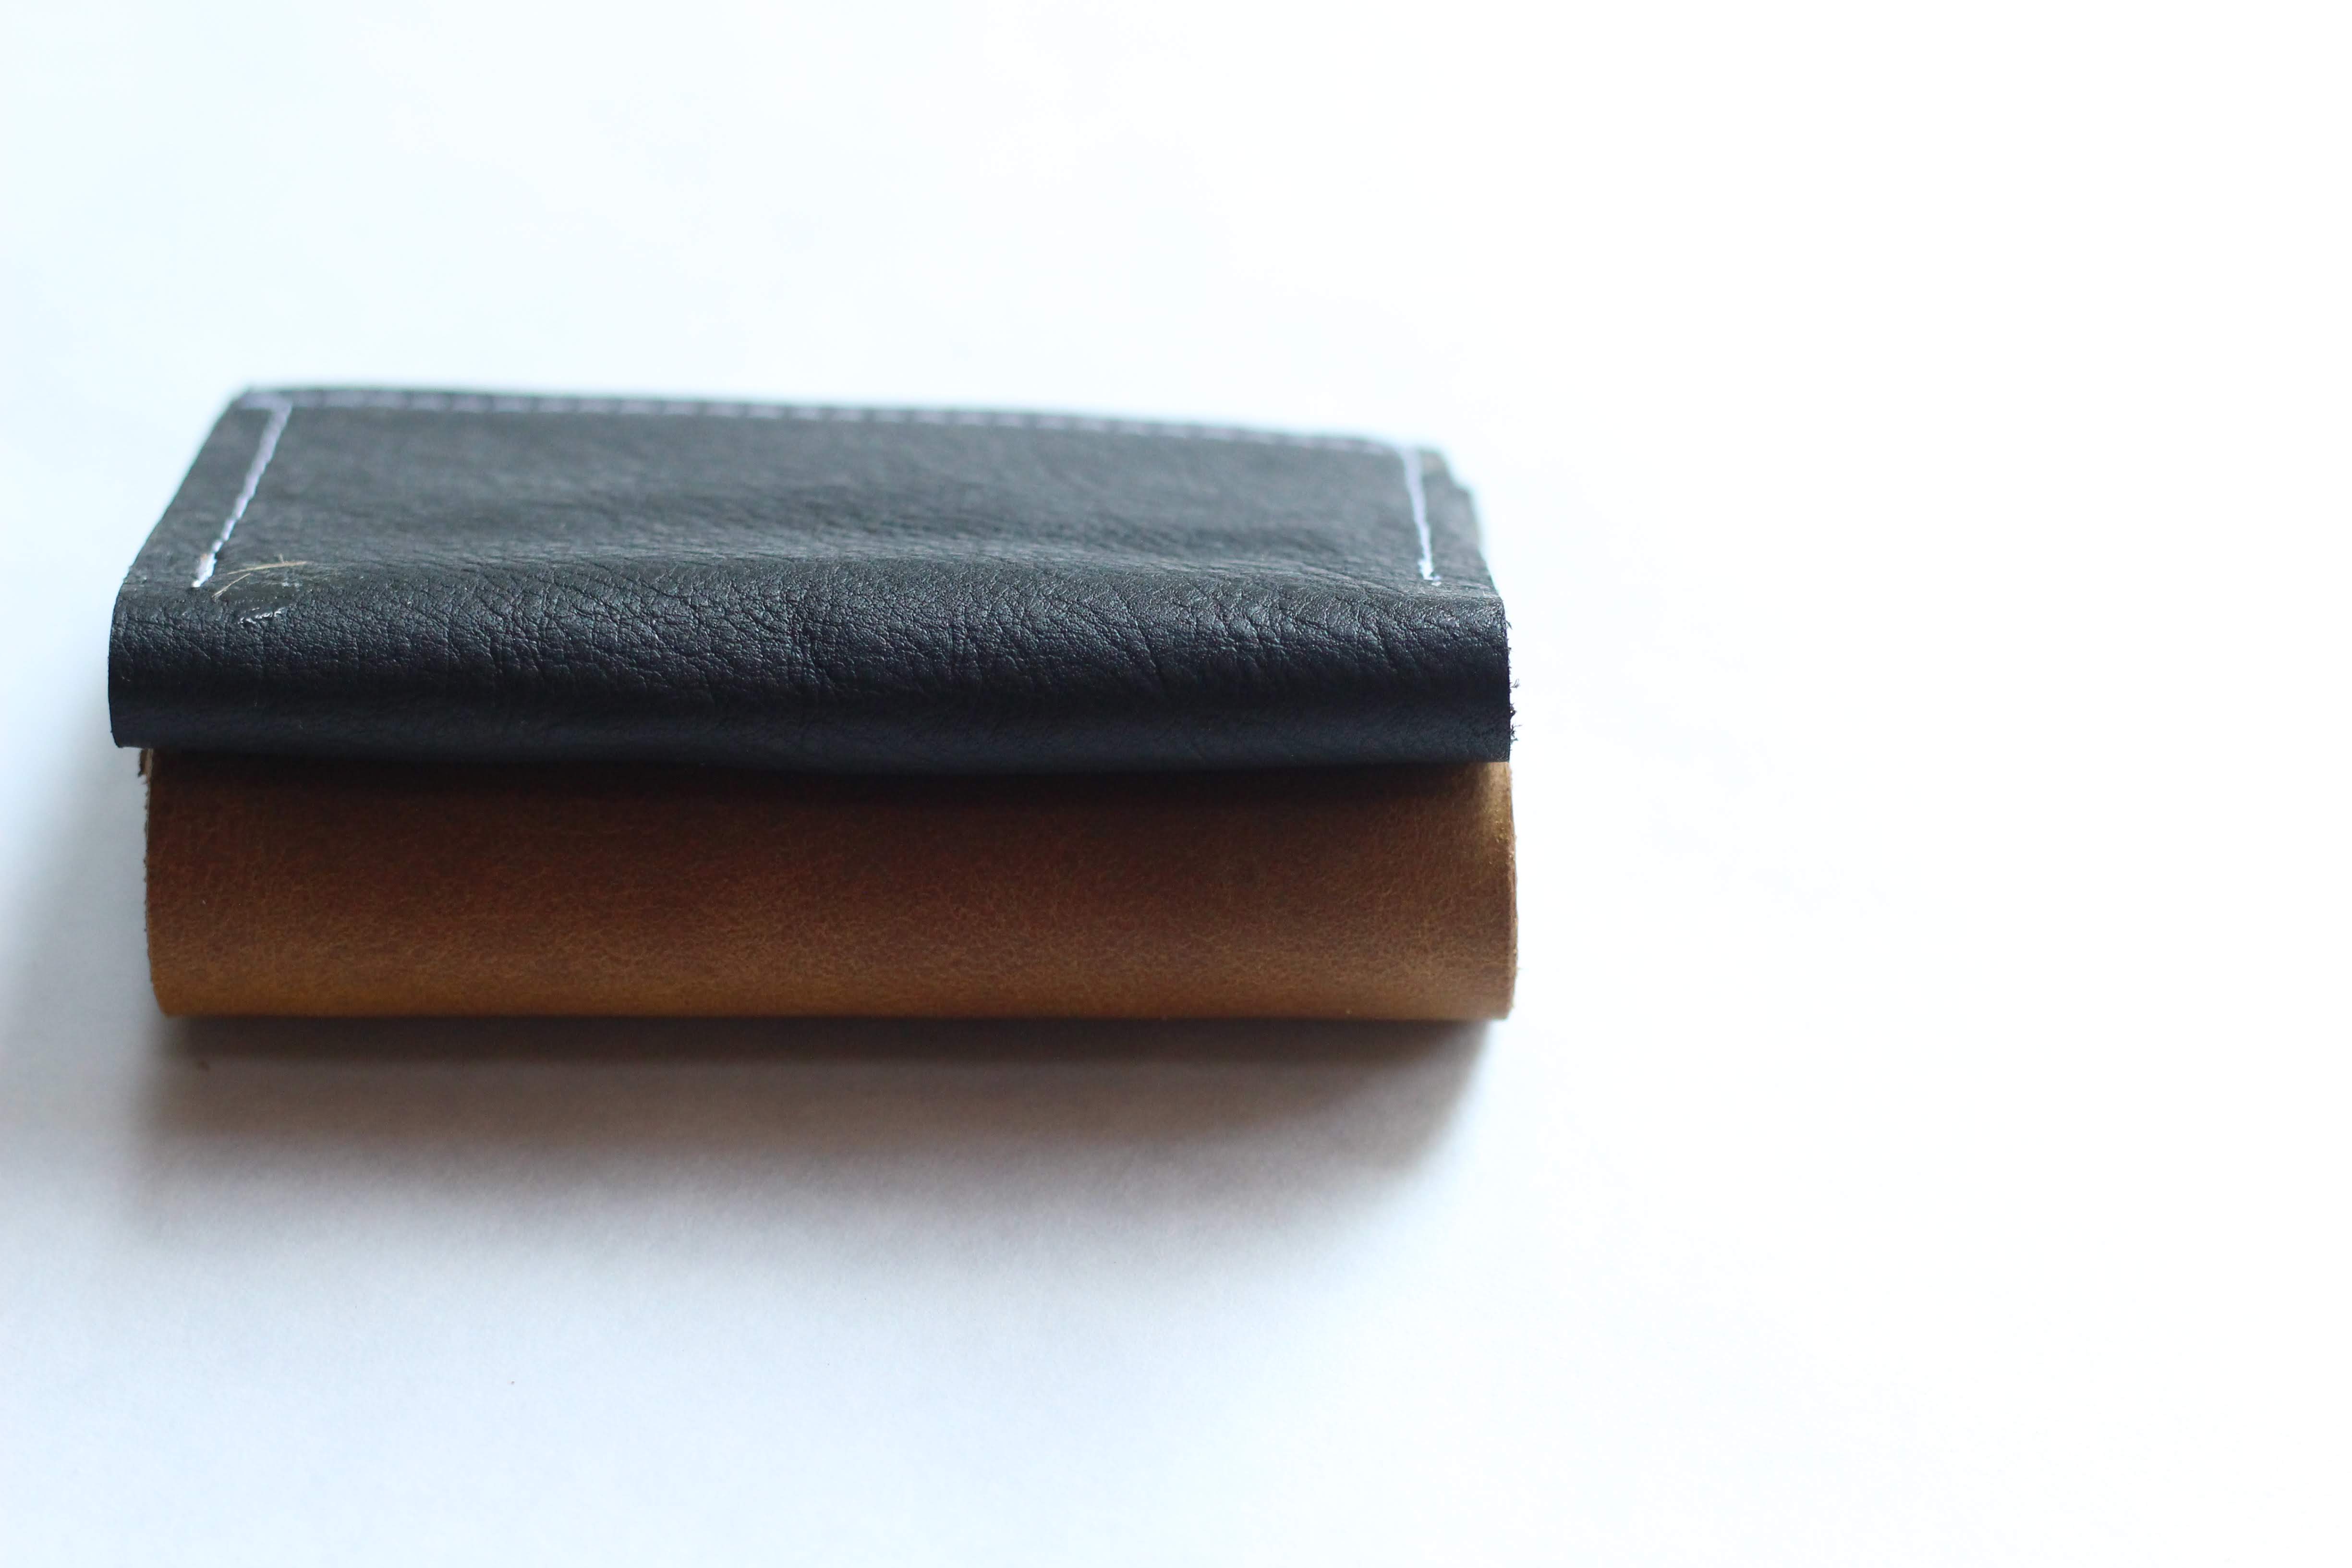 Minimalist BiFold Wallet - Black